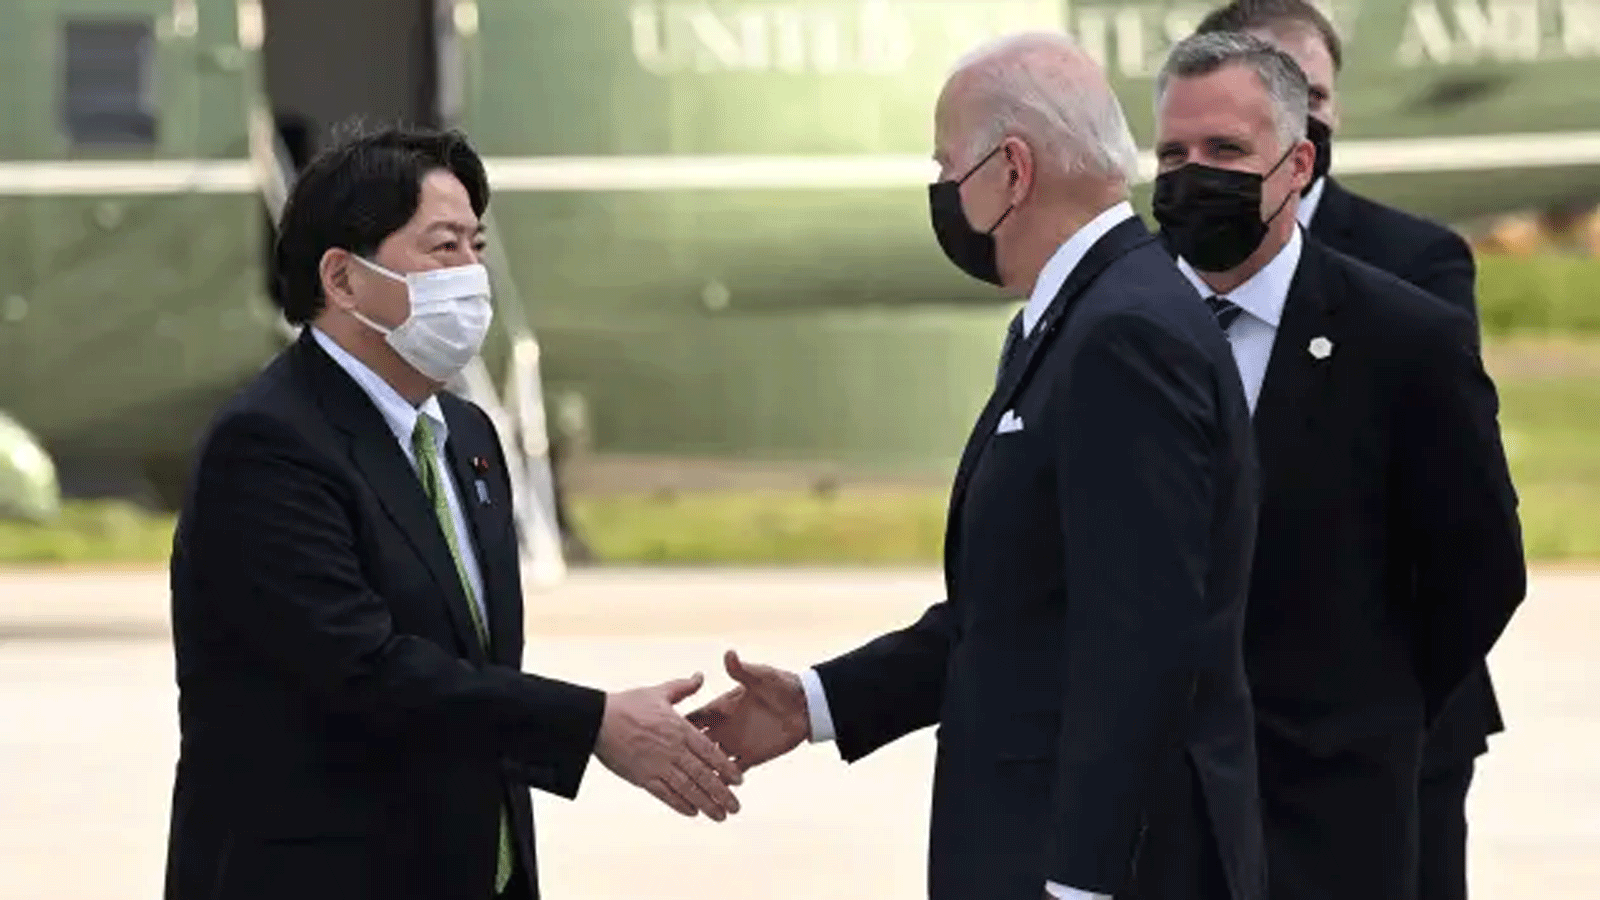 وزير الخارجية الياباني يوشيماسا هاياشي يستقبل الرئيس الأميركي جو بايدن لدى وصوله إلى قاعدة يوكوتا الجوية في فوسا بمحافظة طوكيو في 22 أيار\مايو 2022.